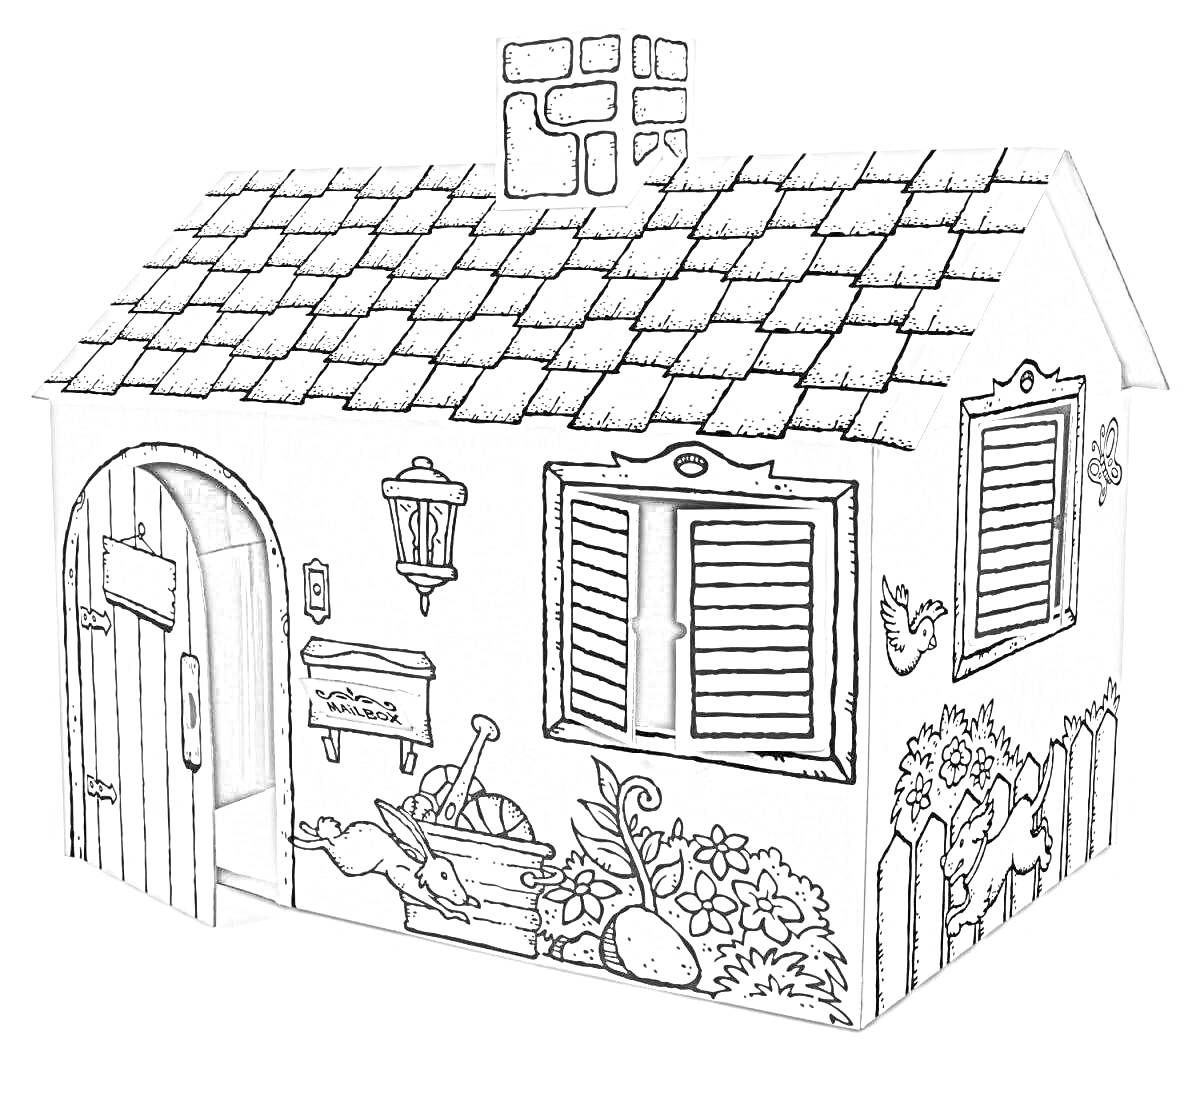 Картонный домик с рельефной крышей, открытой дверью и окном, почтовым ящиком, уличным фонарем, клумбой с растениями, огородными инструментами и забором